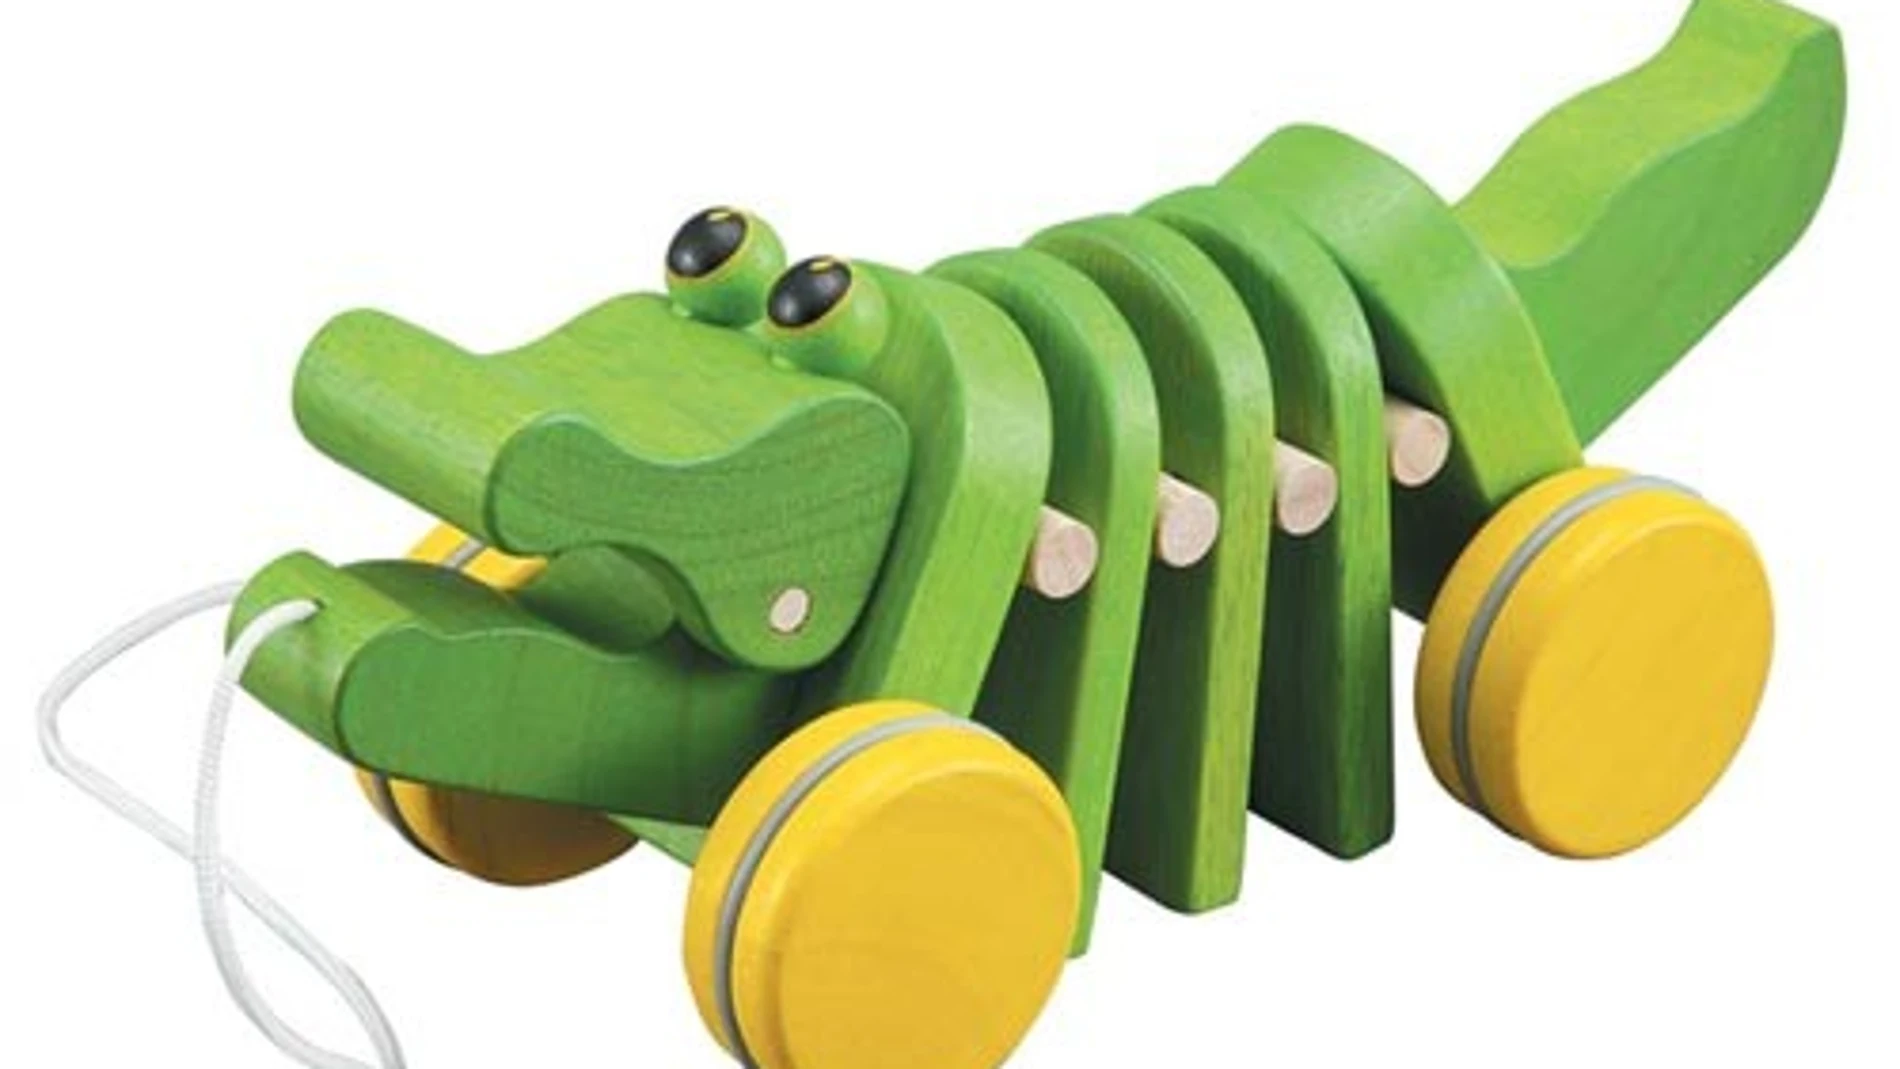 Uno de los juguetes de la marca Plan Toys, especializada en productos que no dañan el medio ambiente